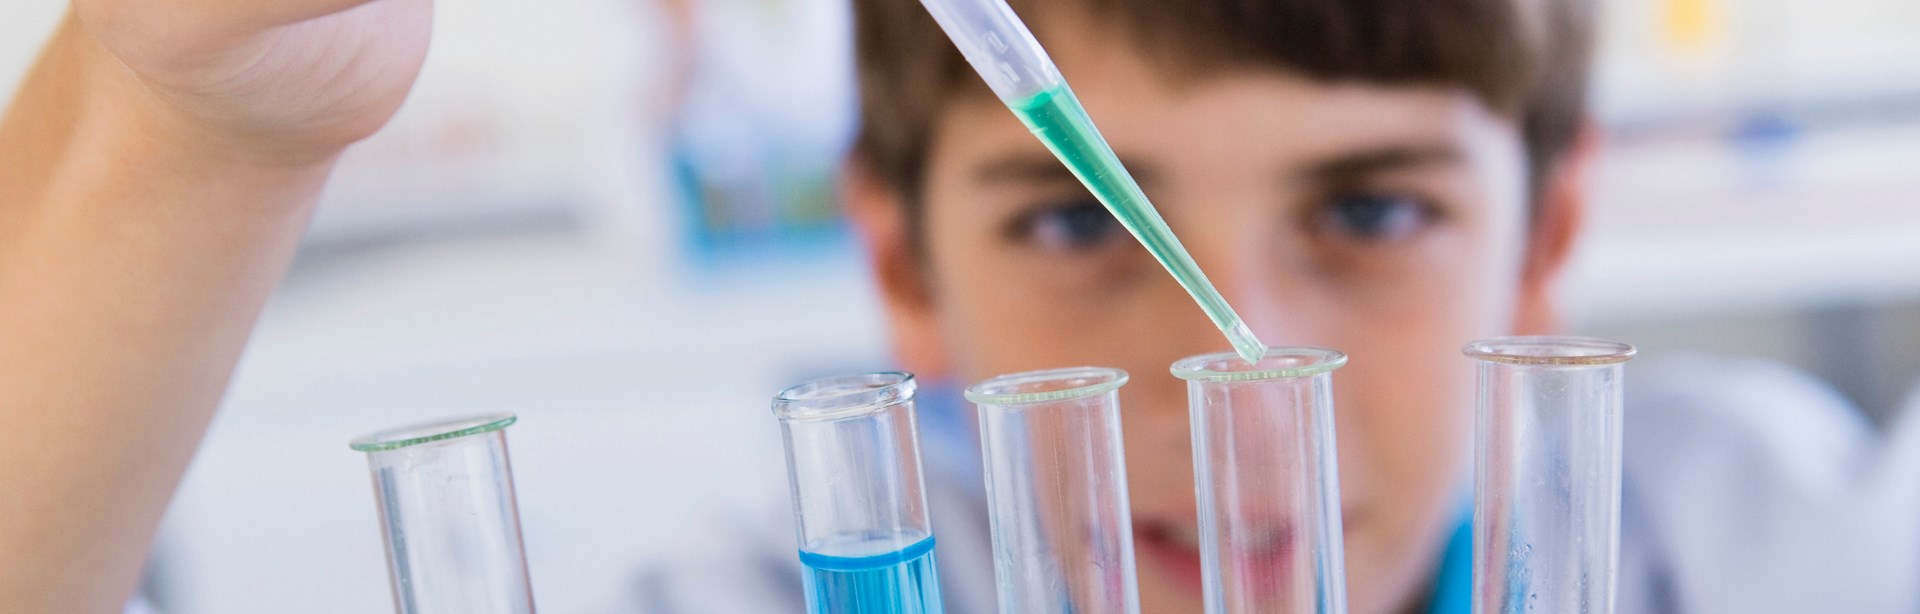 Imagen de portada de curso "Enseñanza por indagación en Ciencias Naturales" - Se visualiza un chico realizando experimentos químicos con tubos de ensayo